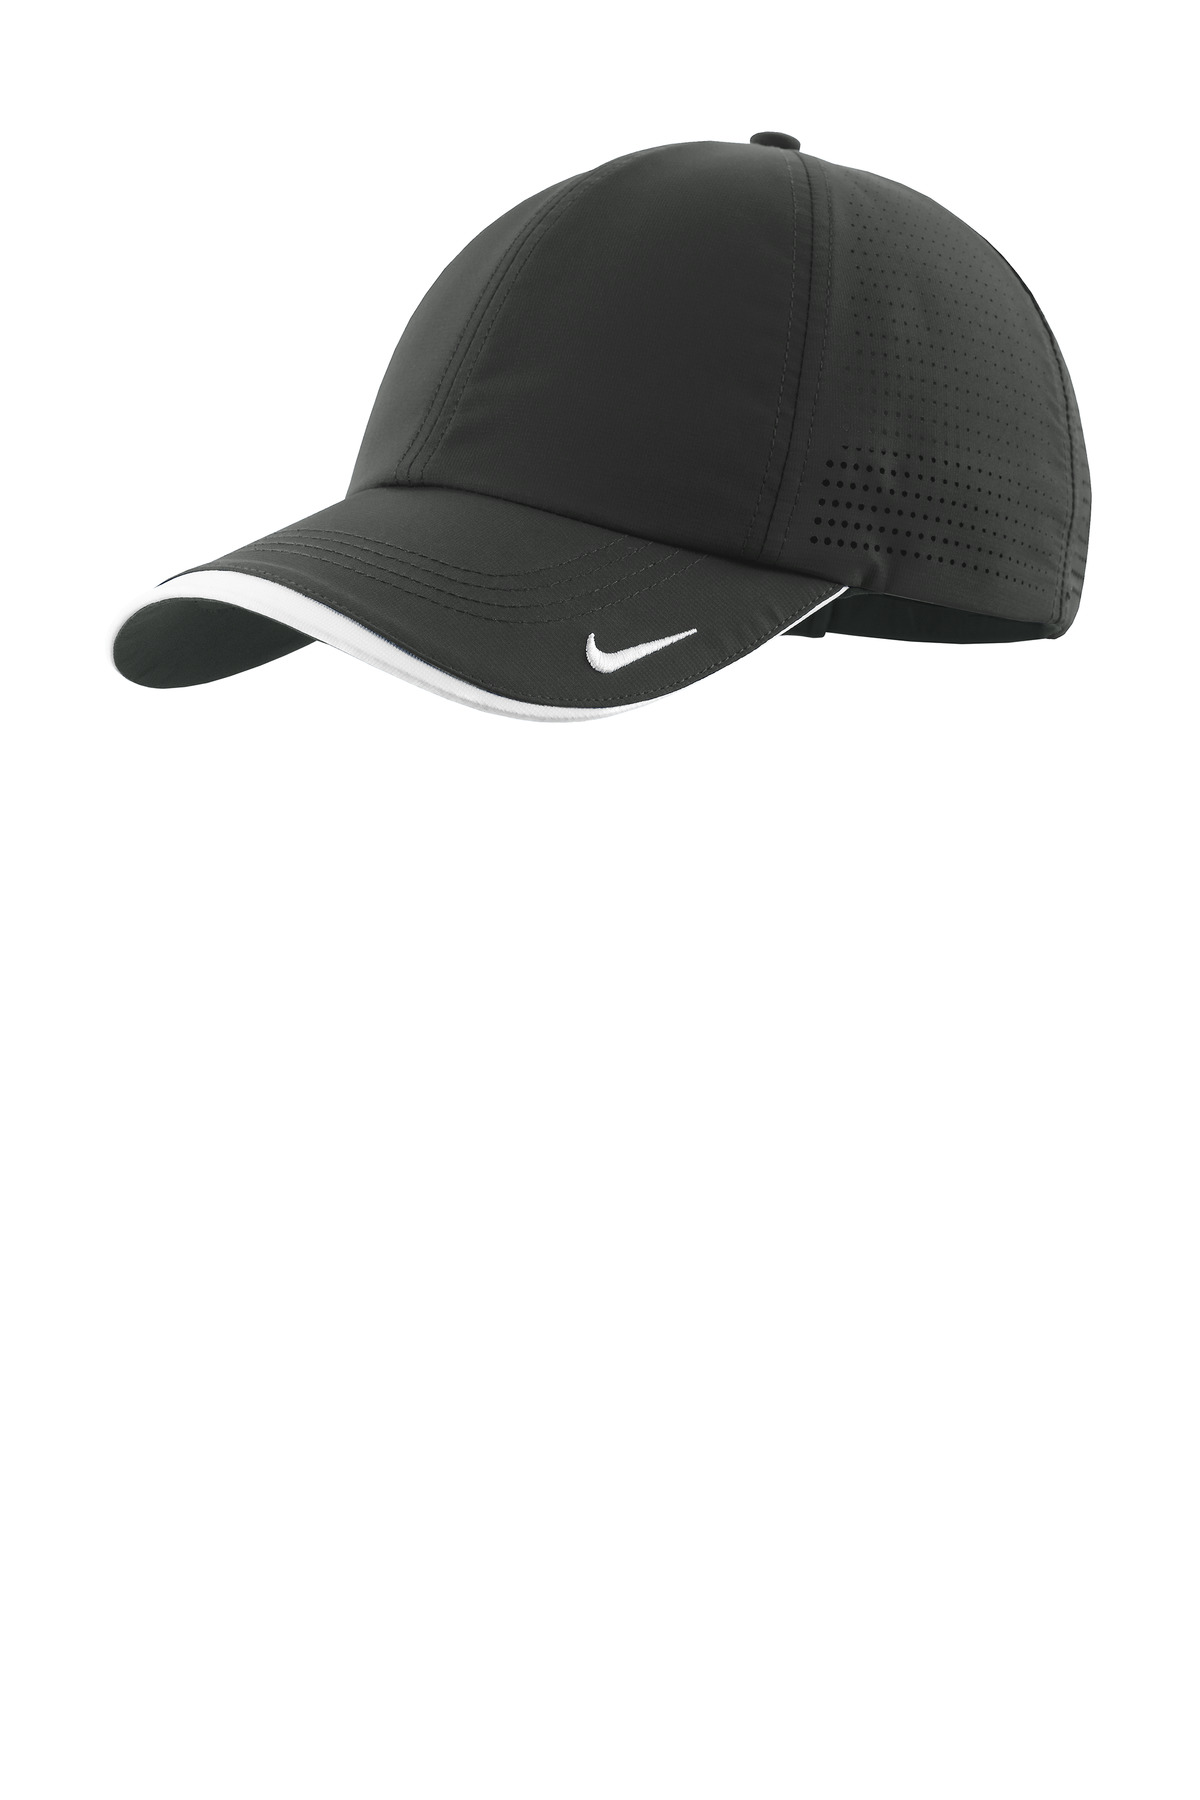 Nike Dri-FIT Perforated Performance Cap-